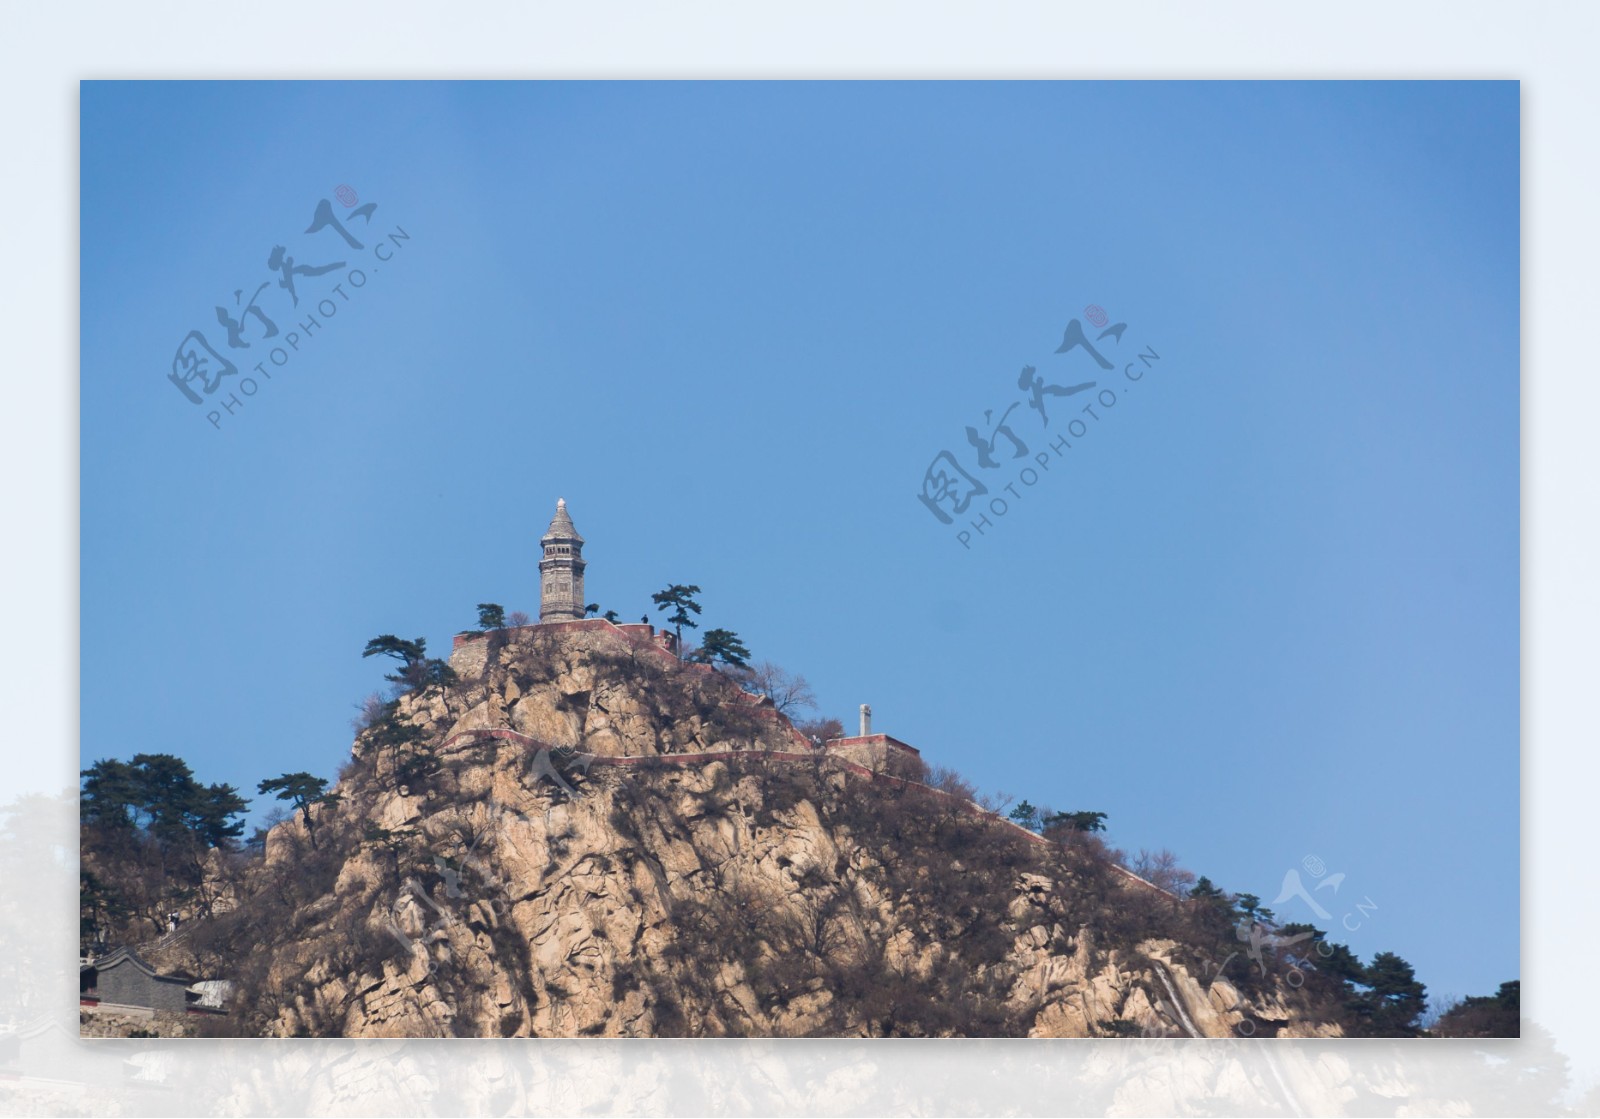 盘山风景区顶峰的佛塔图片